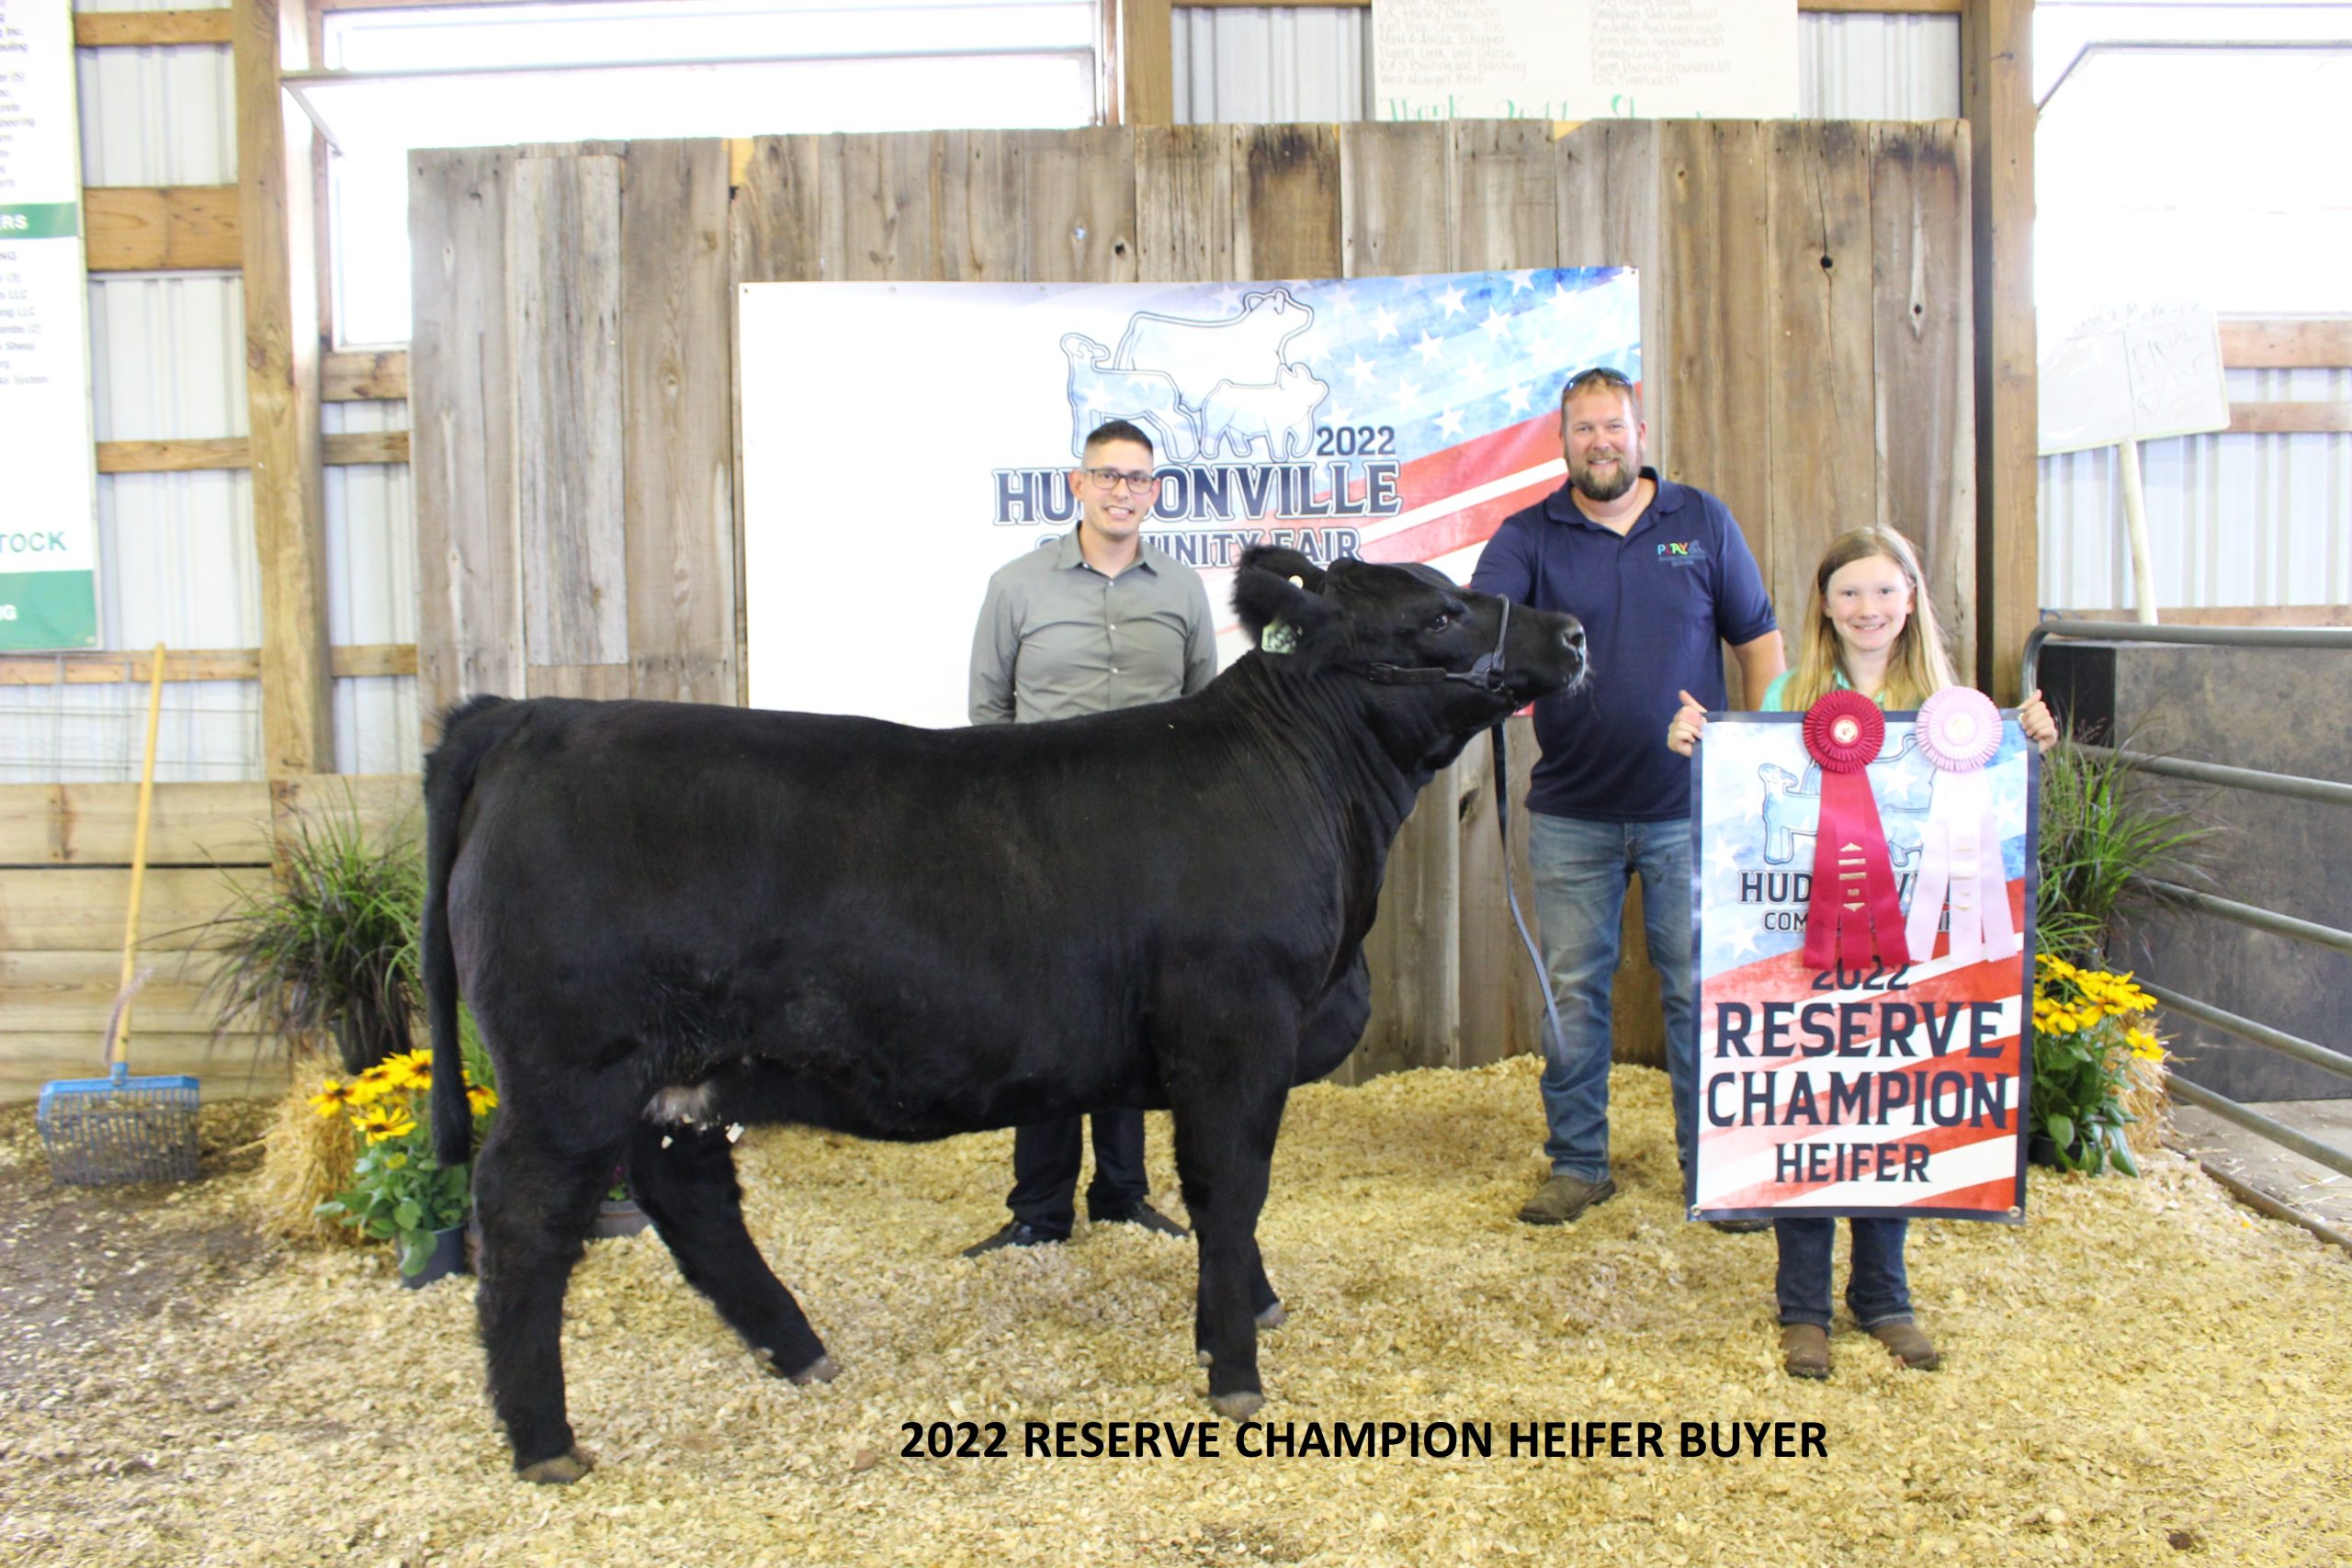 Reserve Champion Market Heifer, 2022 Hudsonville Community Fair